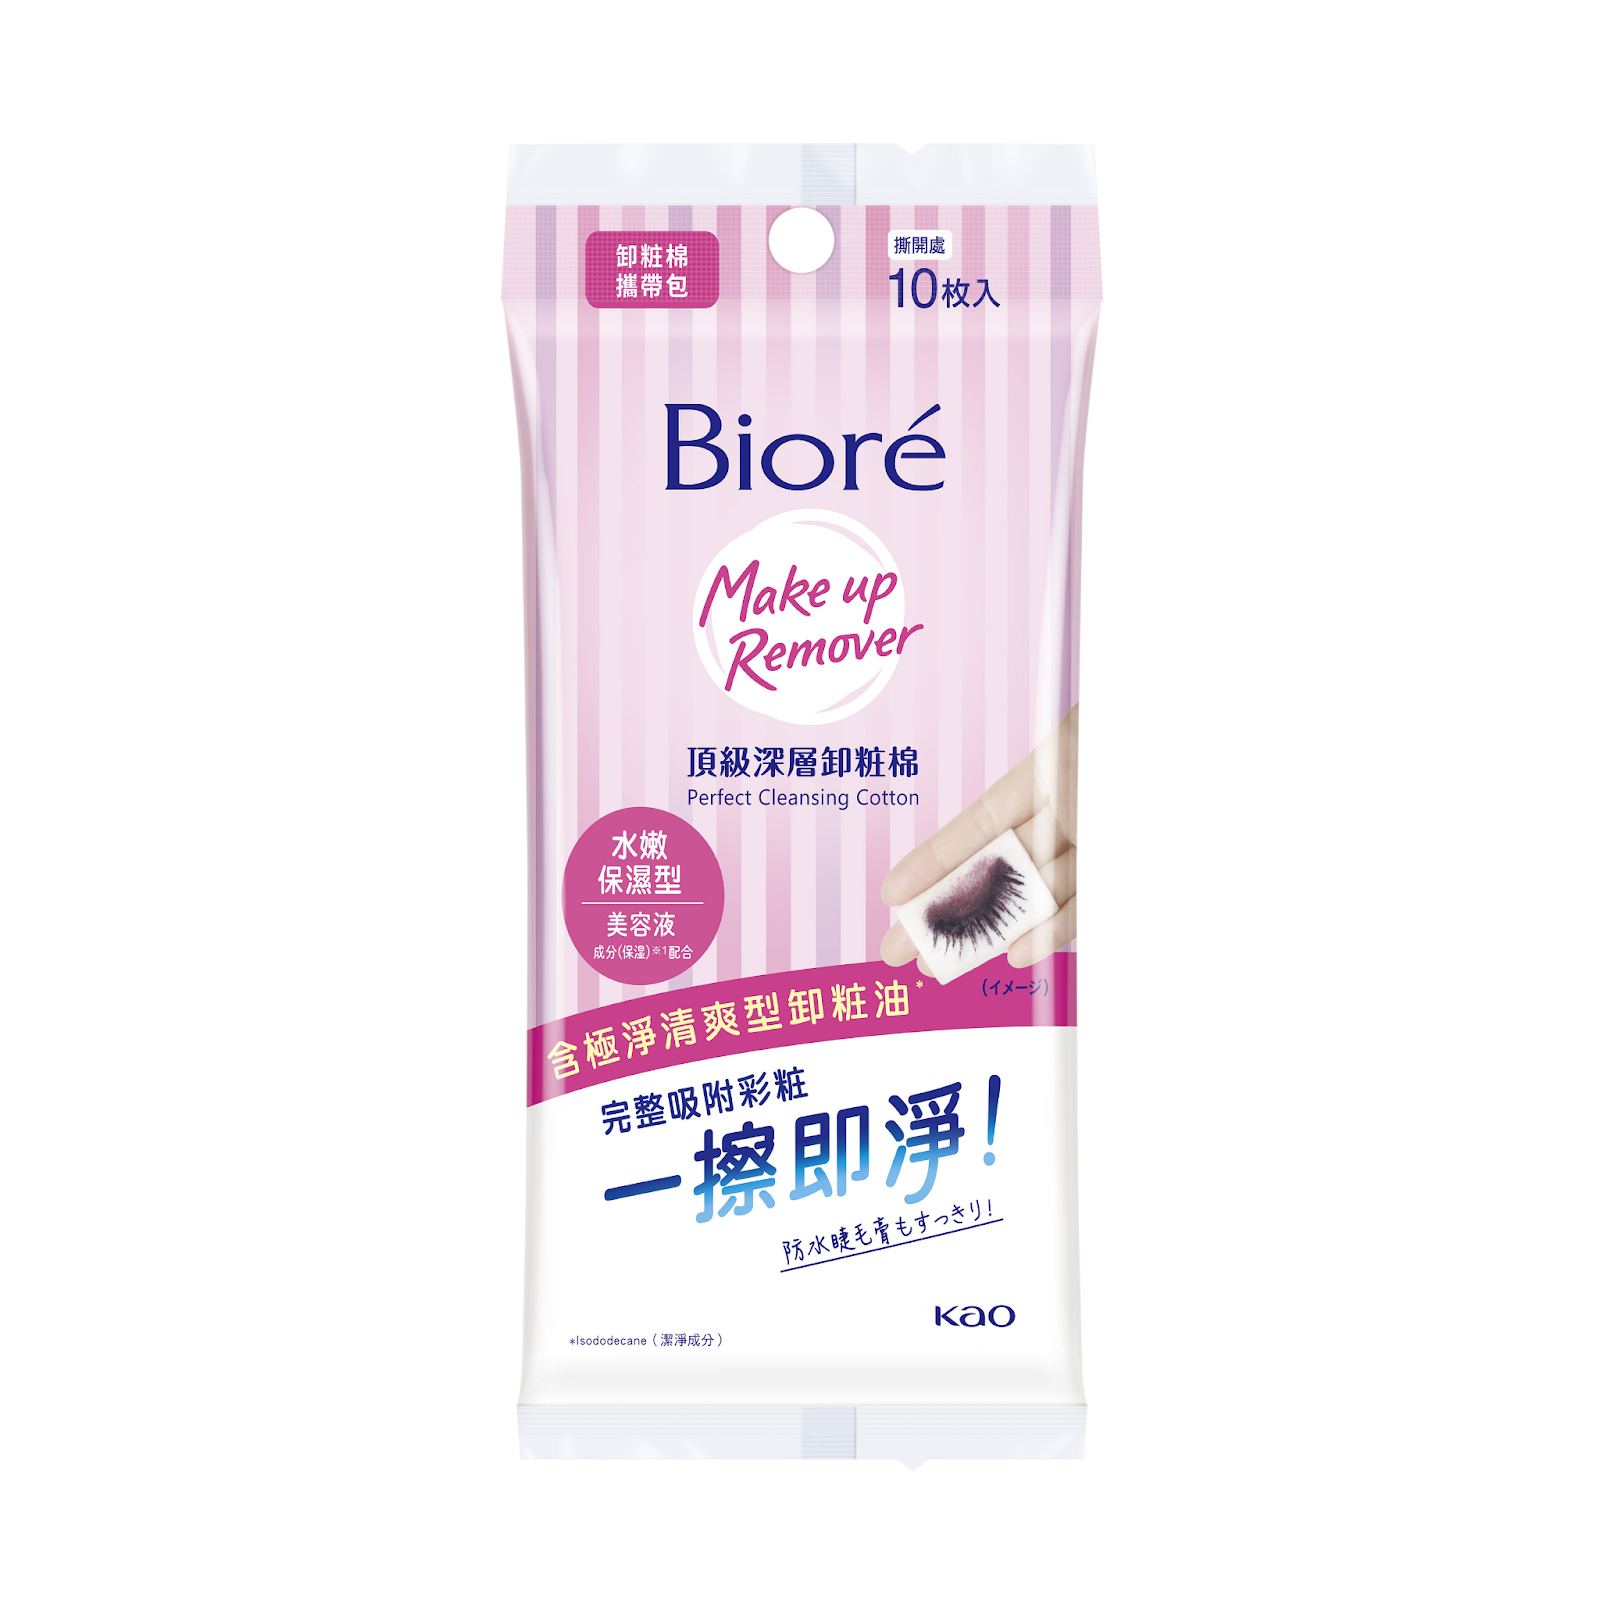 卸妝棉推薦3 - Biore 頂級深層卸粧棉